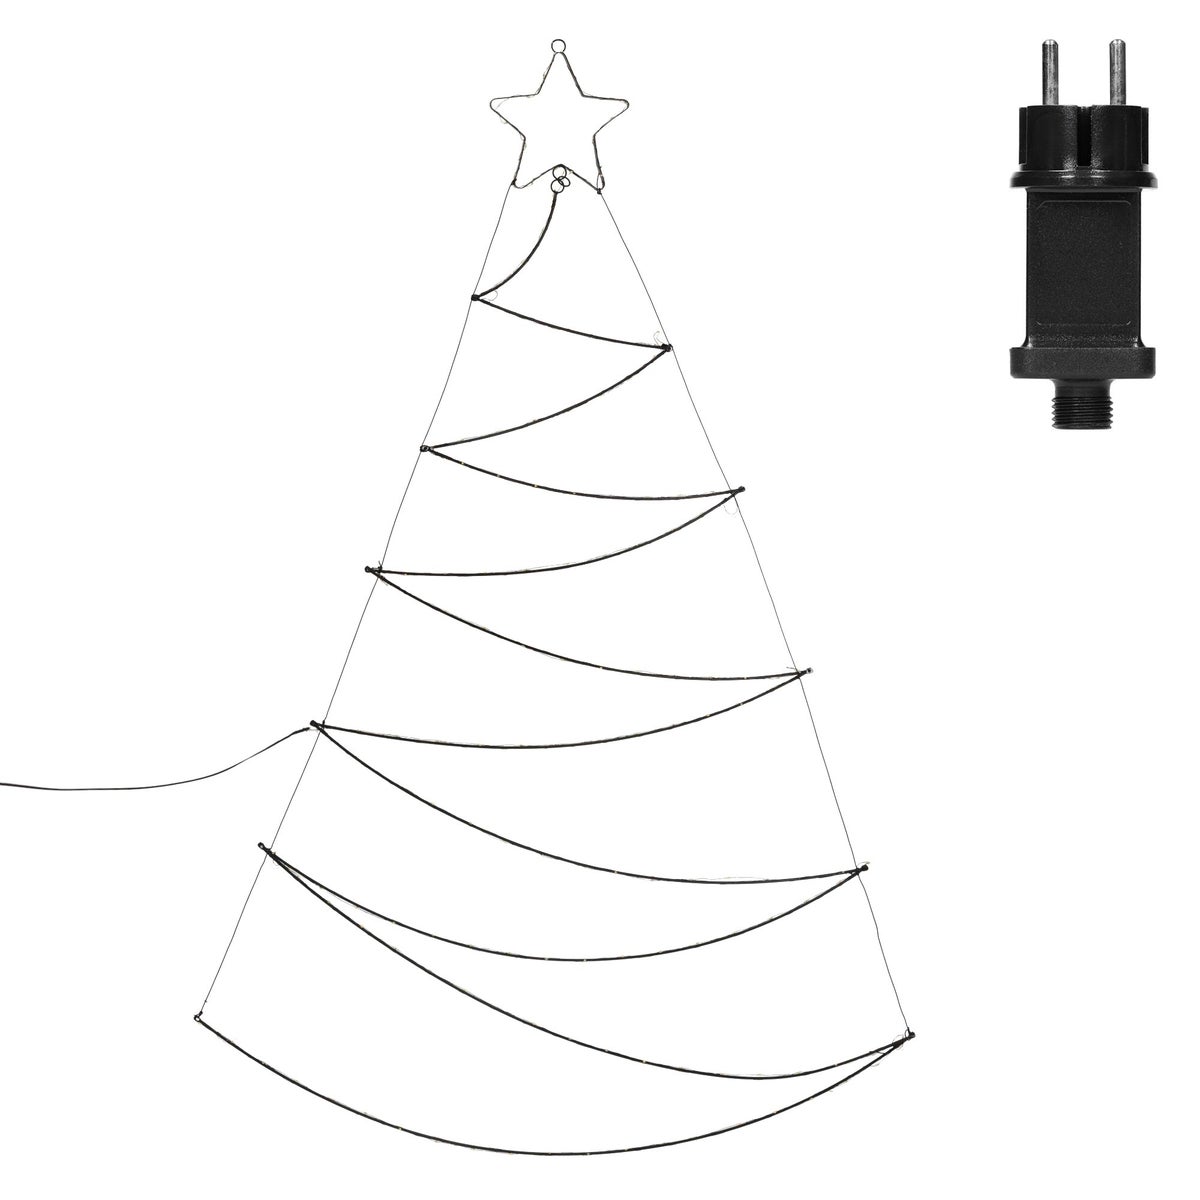 ECD Germany LED Weihnachtsbaum 150cm 150 LEDs Warmweiß, Stern, wandmontiert, LED Baum als dekorativer Aufhänger zu Weihnachten, Weihnachtsdekoration für Innen/Außen, Tannenbaum Christbaum Lichterkette